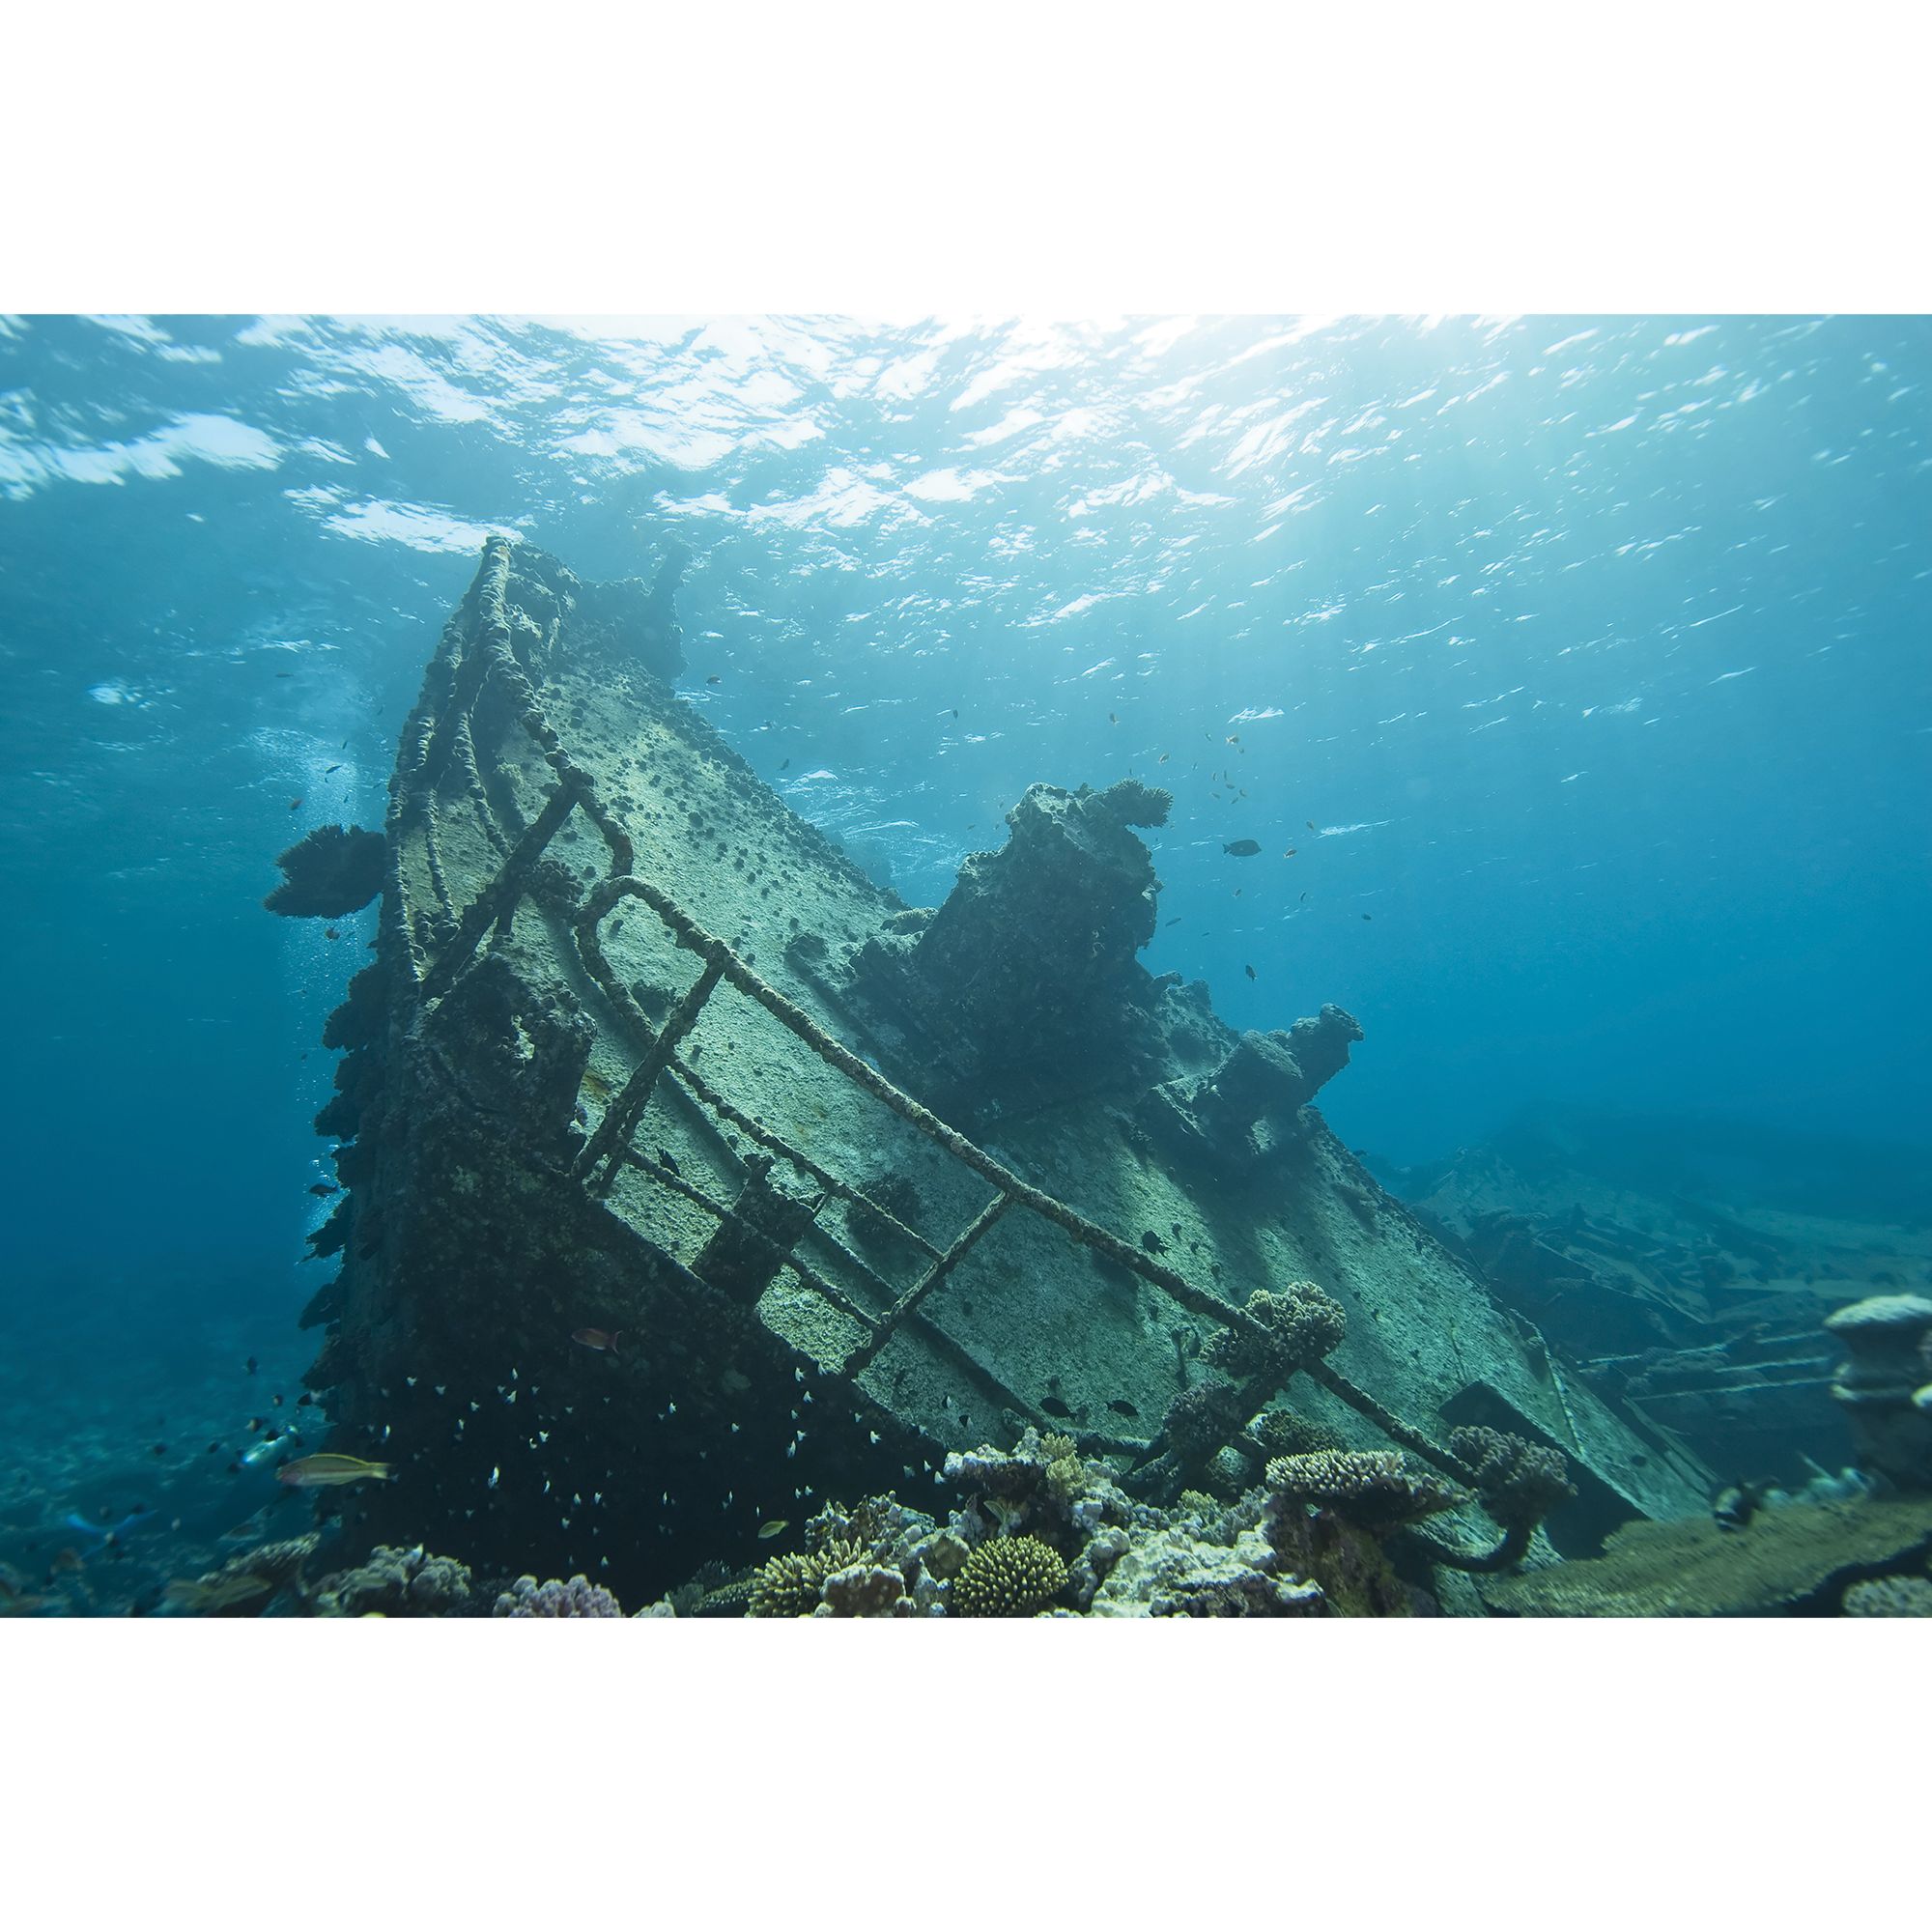 Top Fin Cave Shipwreck Reversible Aquarium Background Fish